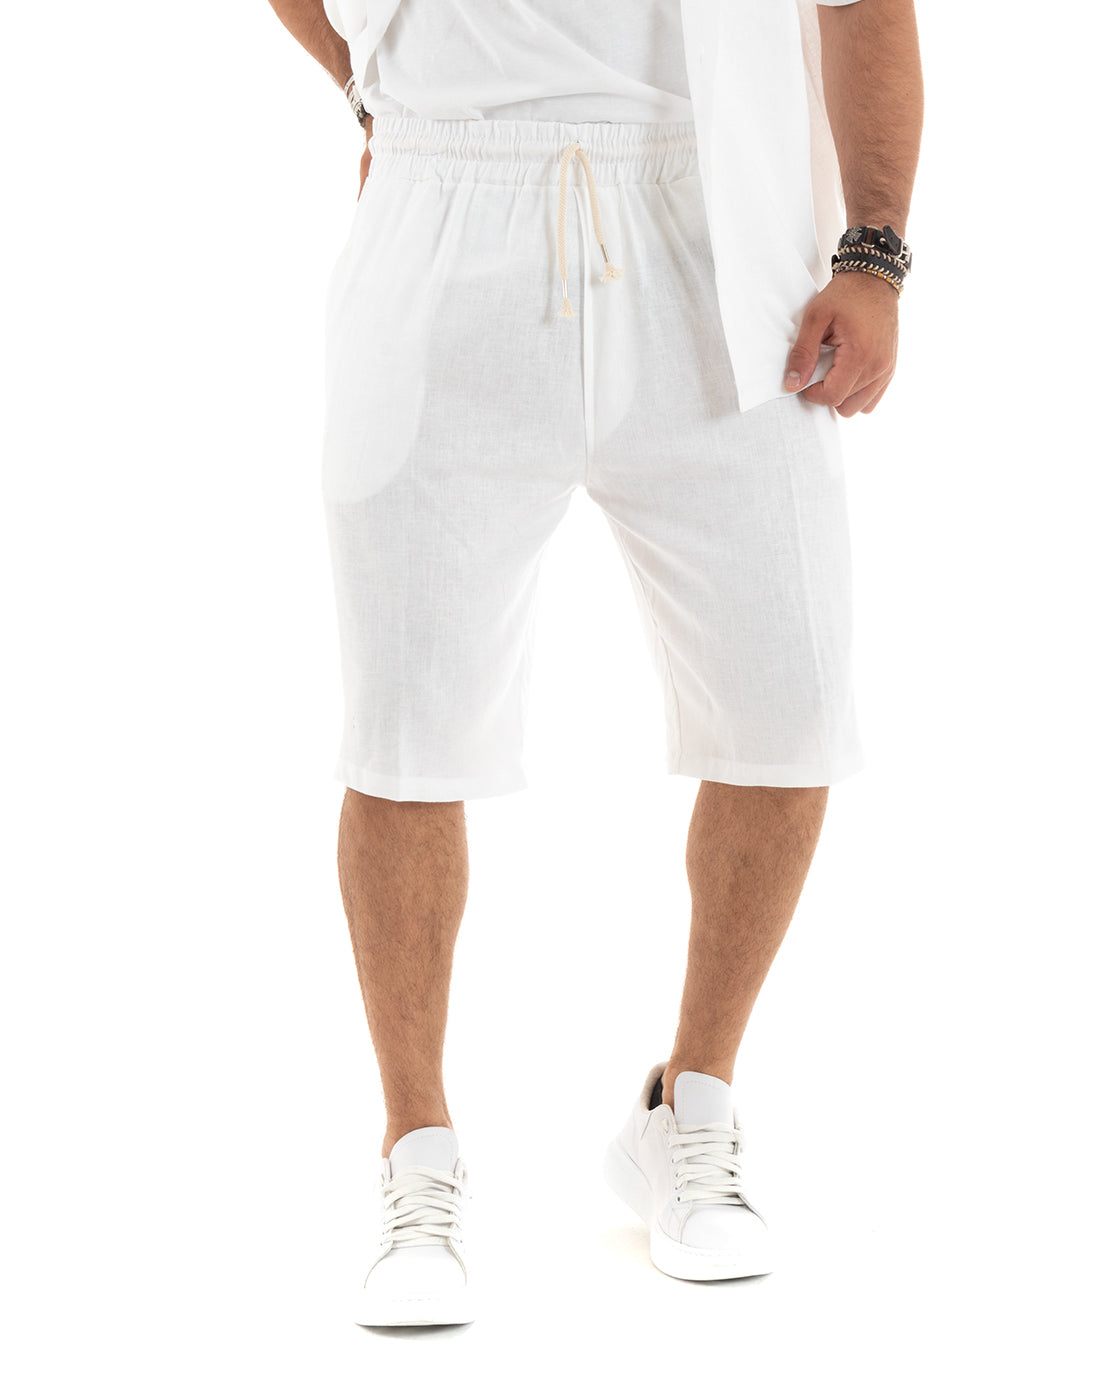 Completo Set Coordinato Uomo Lino Camicia Con Colletto Bermuda Outfit Bianco GIOSAL-OU2385A